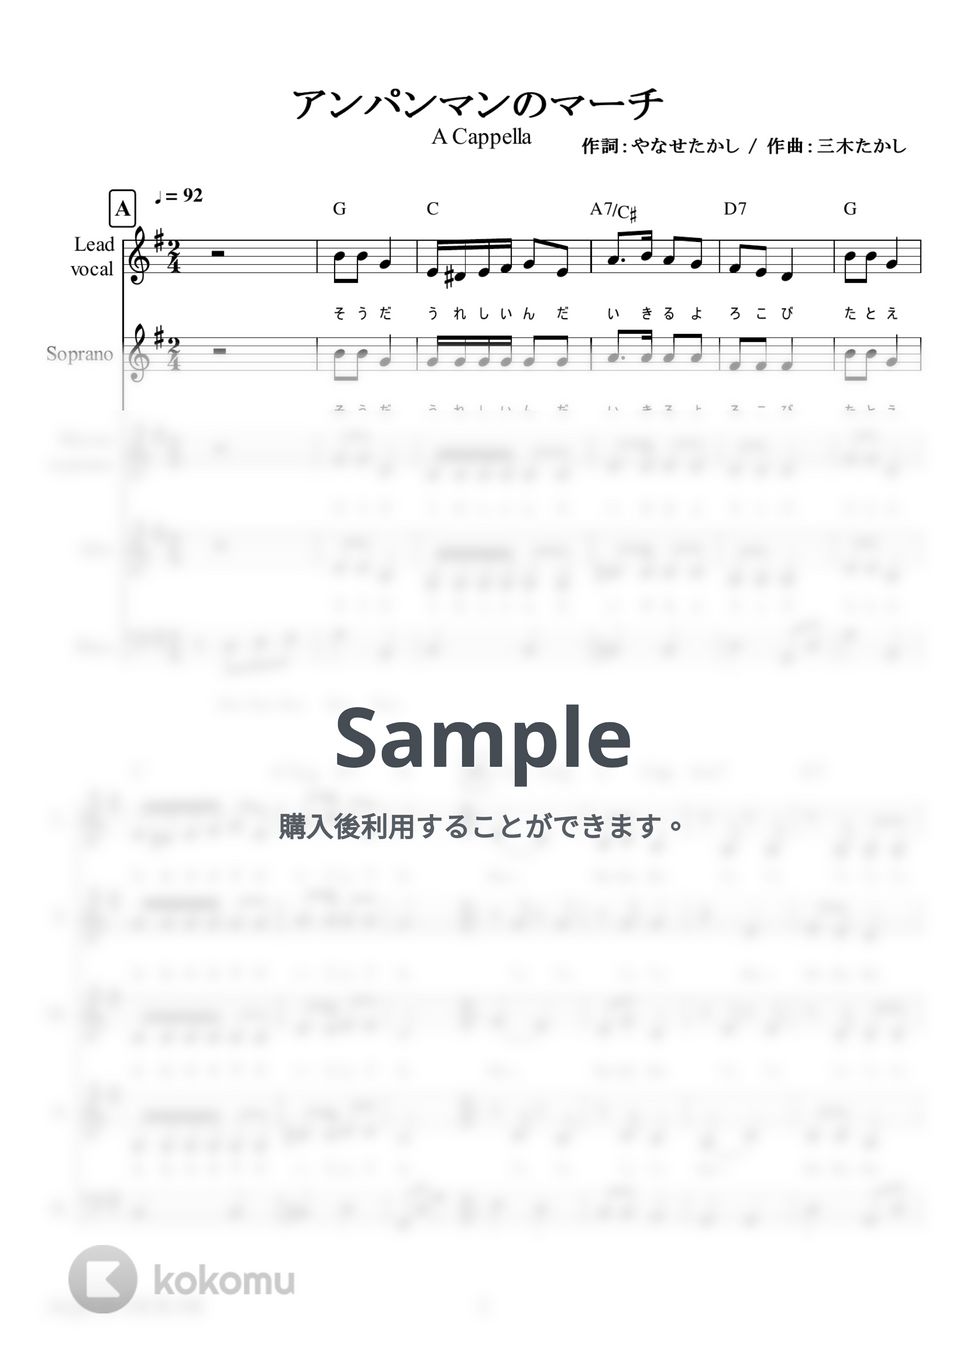 ドリーミング - アンパンマンのマーチ (アカペラ楽譜♪５声ボイパなし) by 飯田 亜紗子